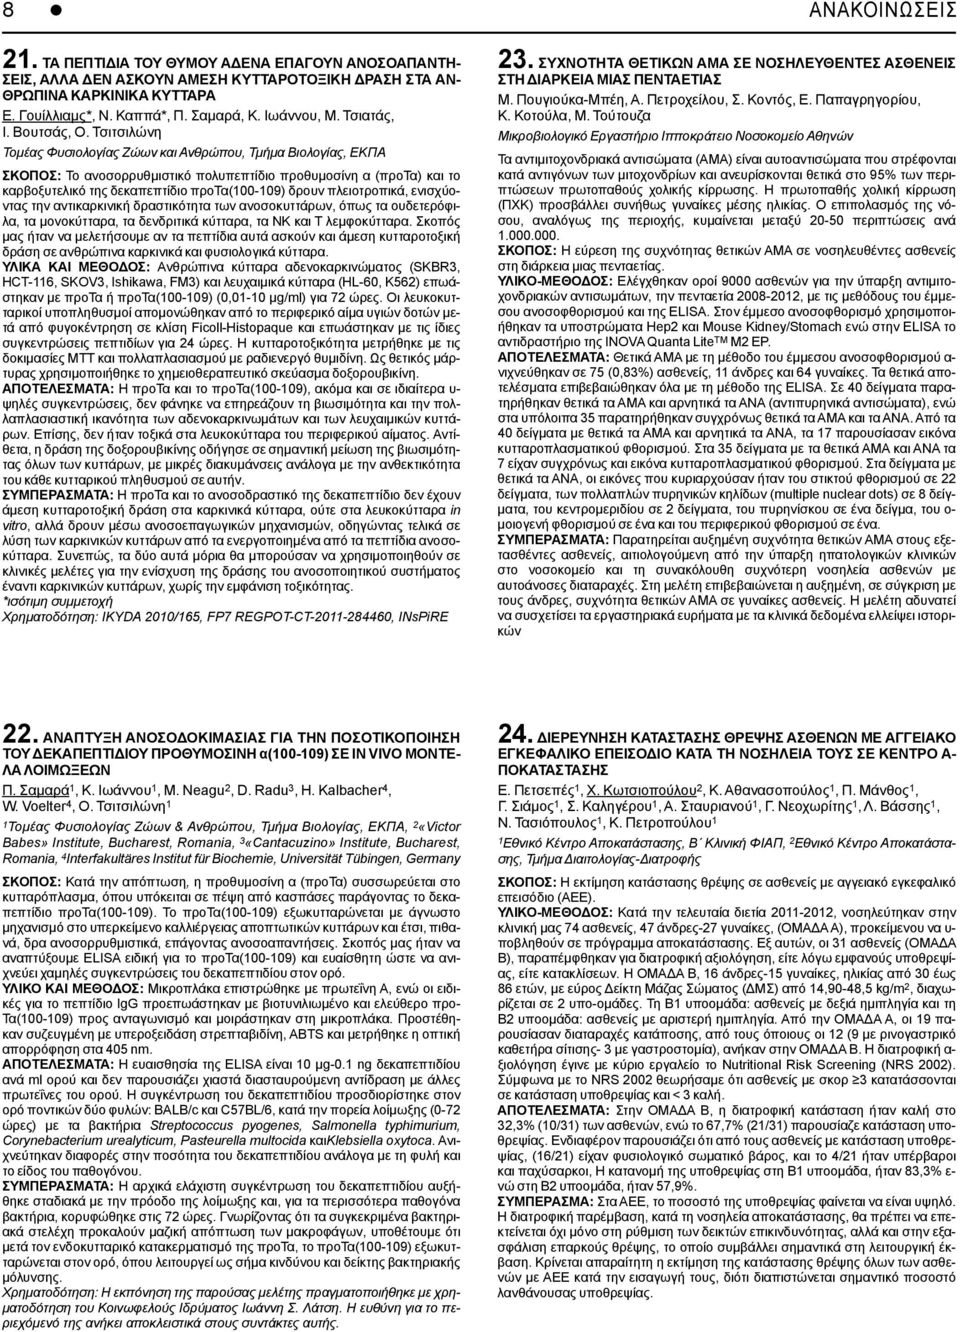 Τσιτσιλώνη Τομέας Φυσιολογίας Ζώων και Ανθρώπου, Τμήμα Βιολογίας, ΕΚΠΑ ΣΚΟΠΟΣ: Το ανοσορρυθμιστικό πολυπεπτίδιο προθυμοσίνη α (προτα) και το καρβοξυτελικό της δεκαπεπτίδιο προτα(100-109) δρουν